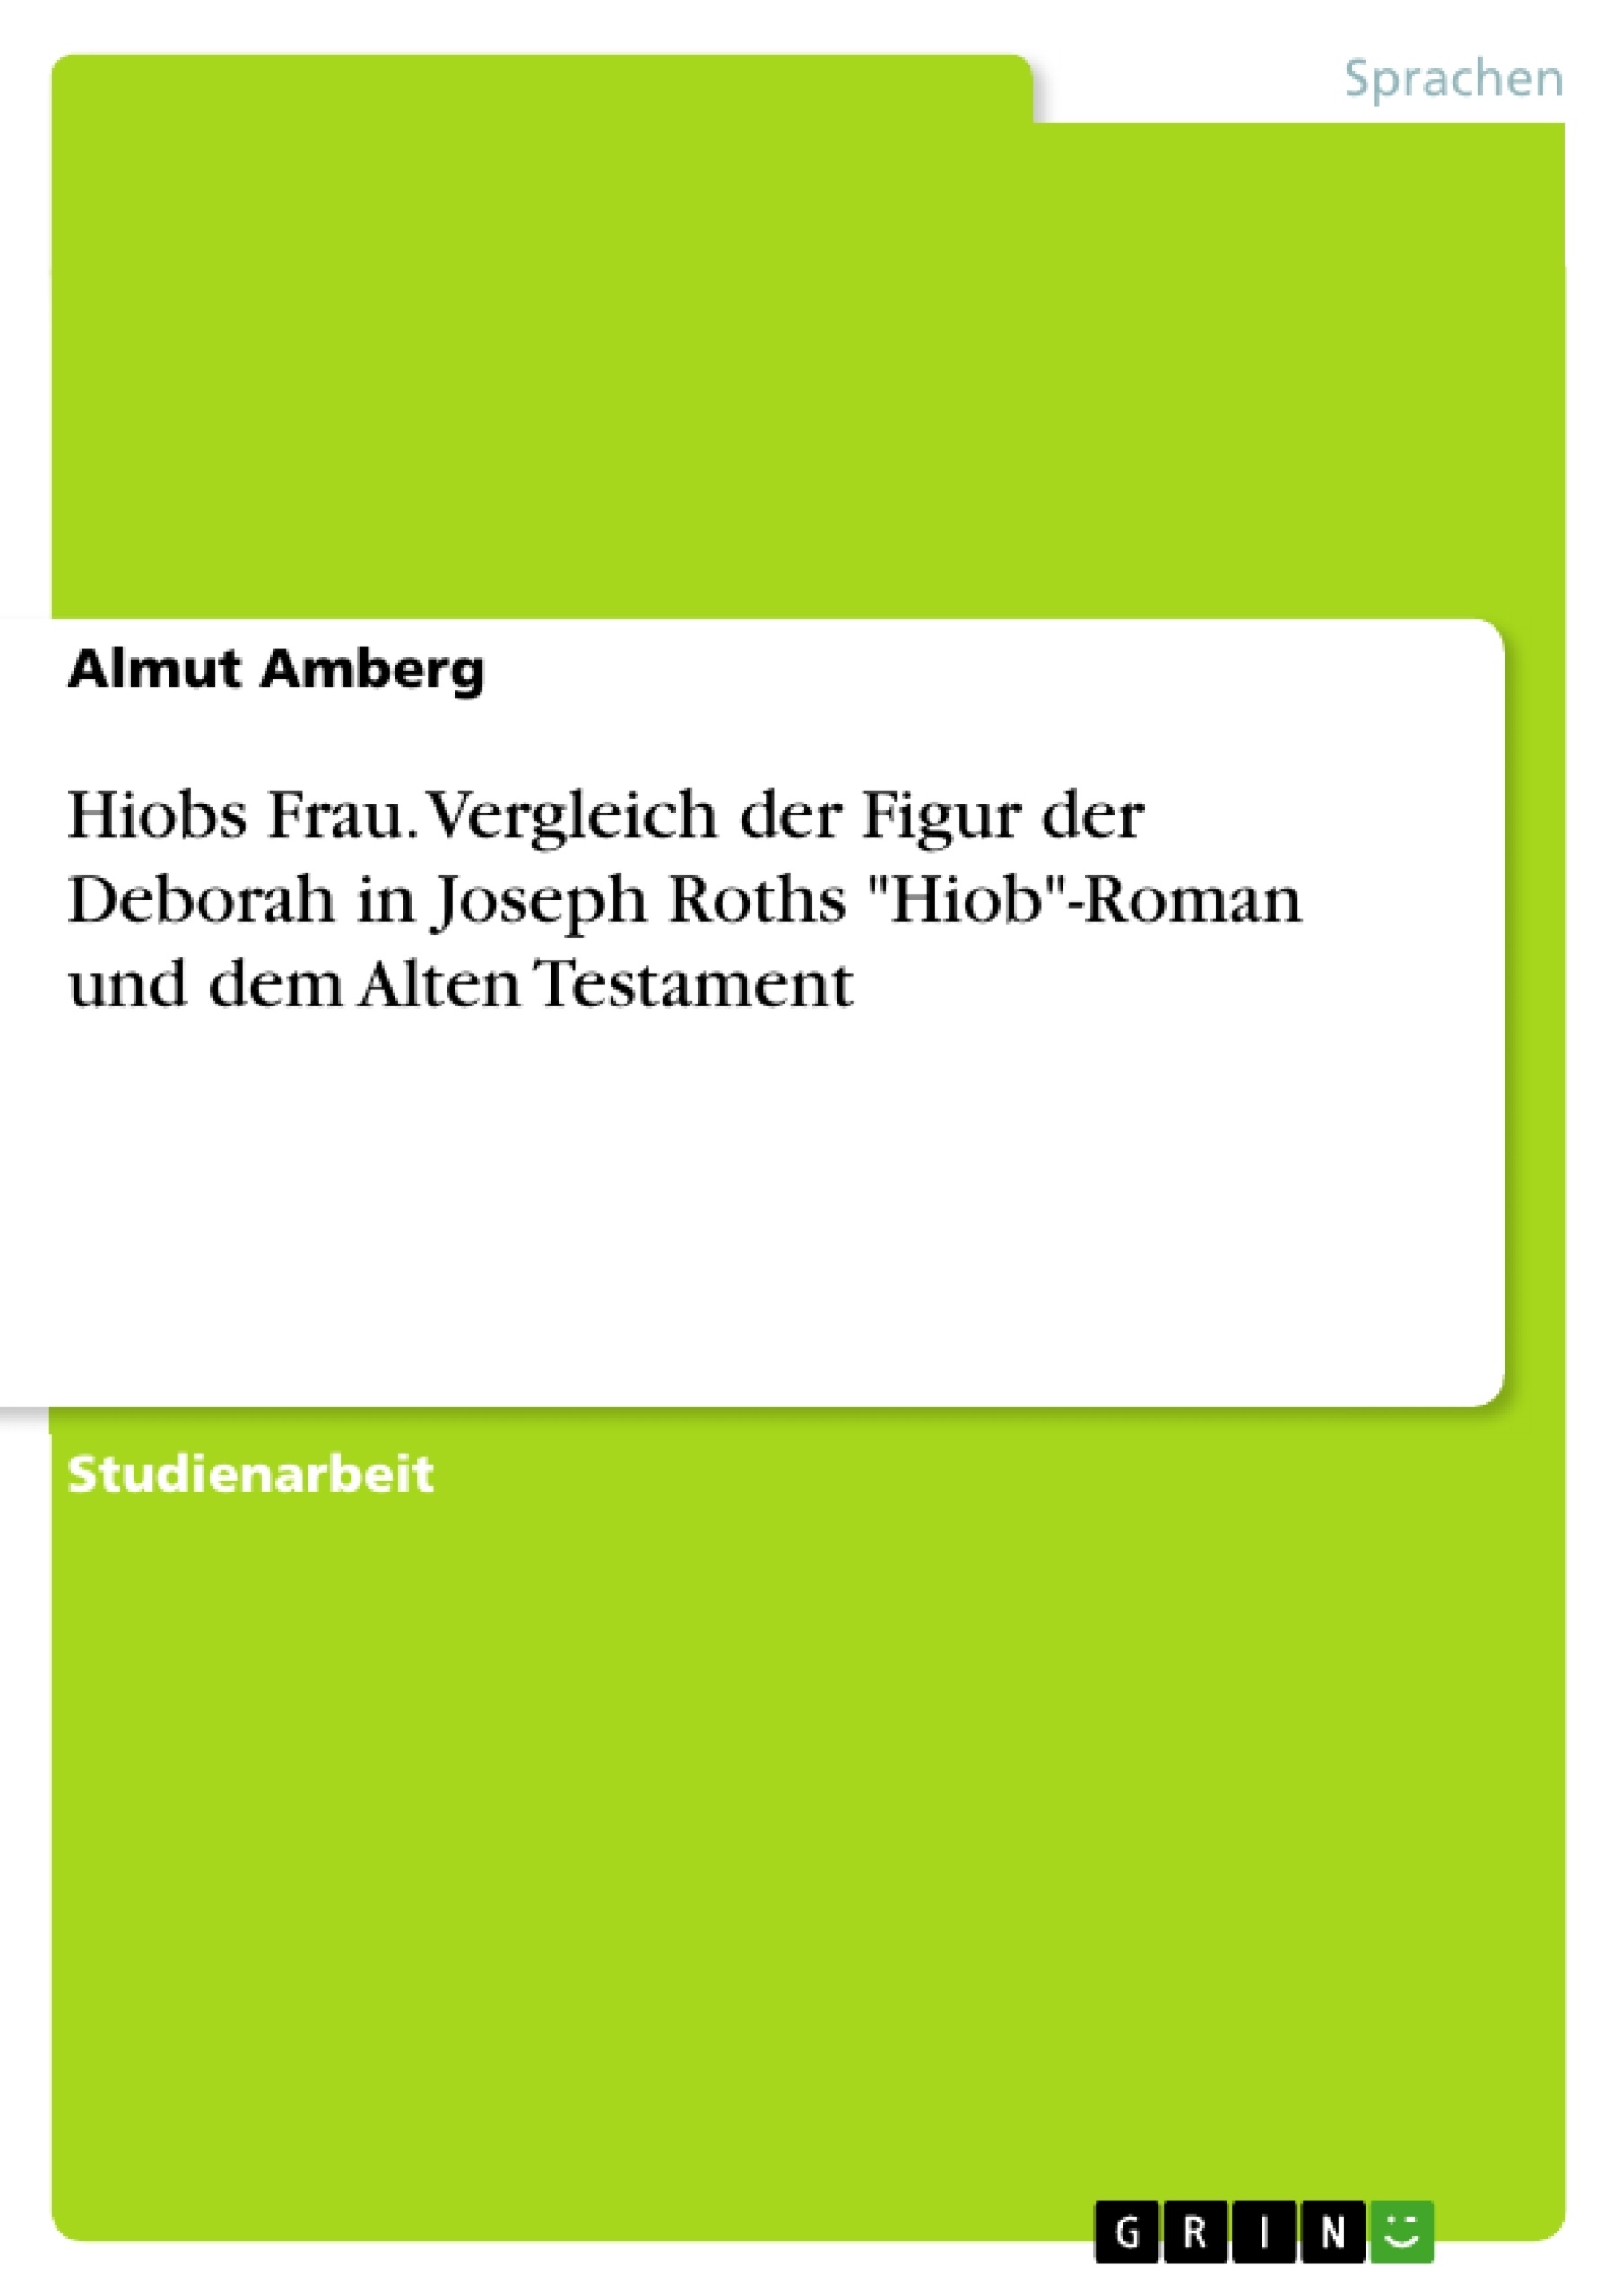 Titre: Hiobs Frau. Vergleich der Figur der Deborah in Joseph Roths "Hiob"-Roman und dem Alten Testament